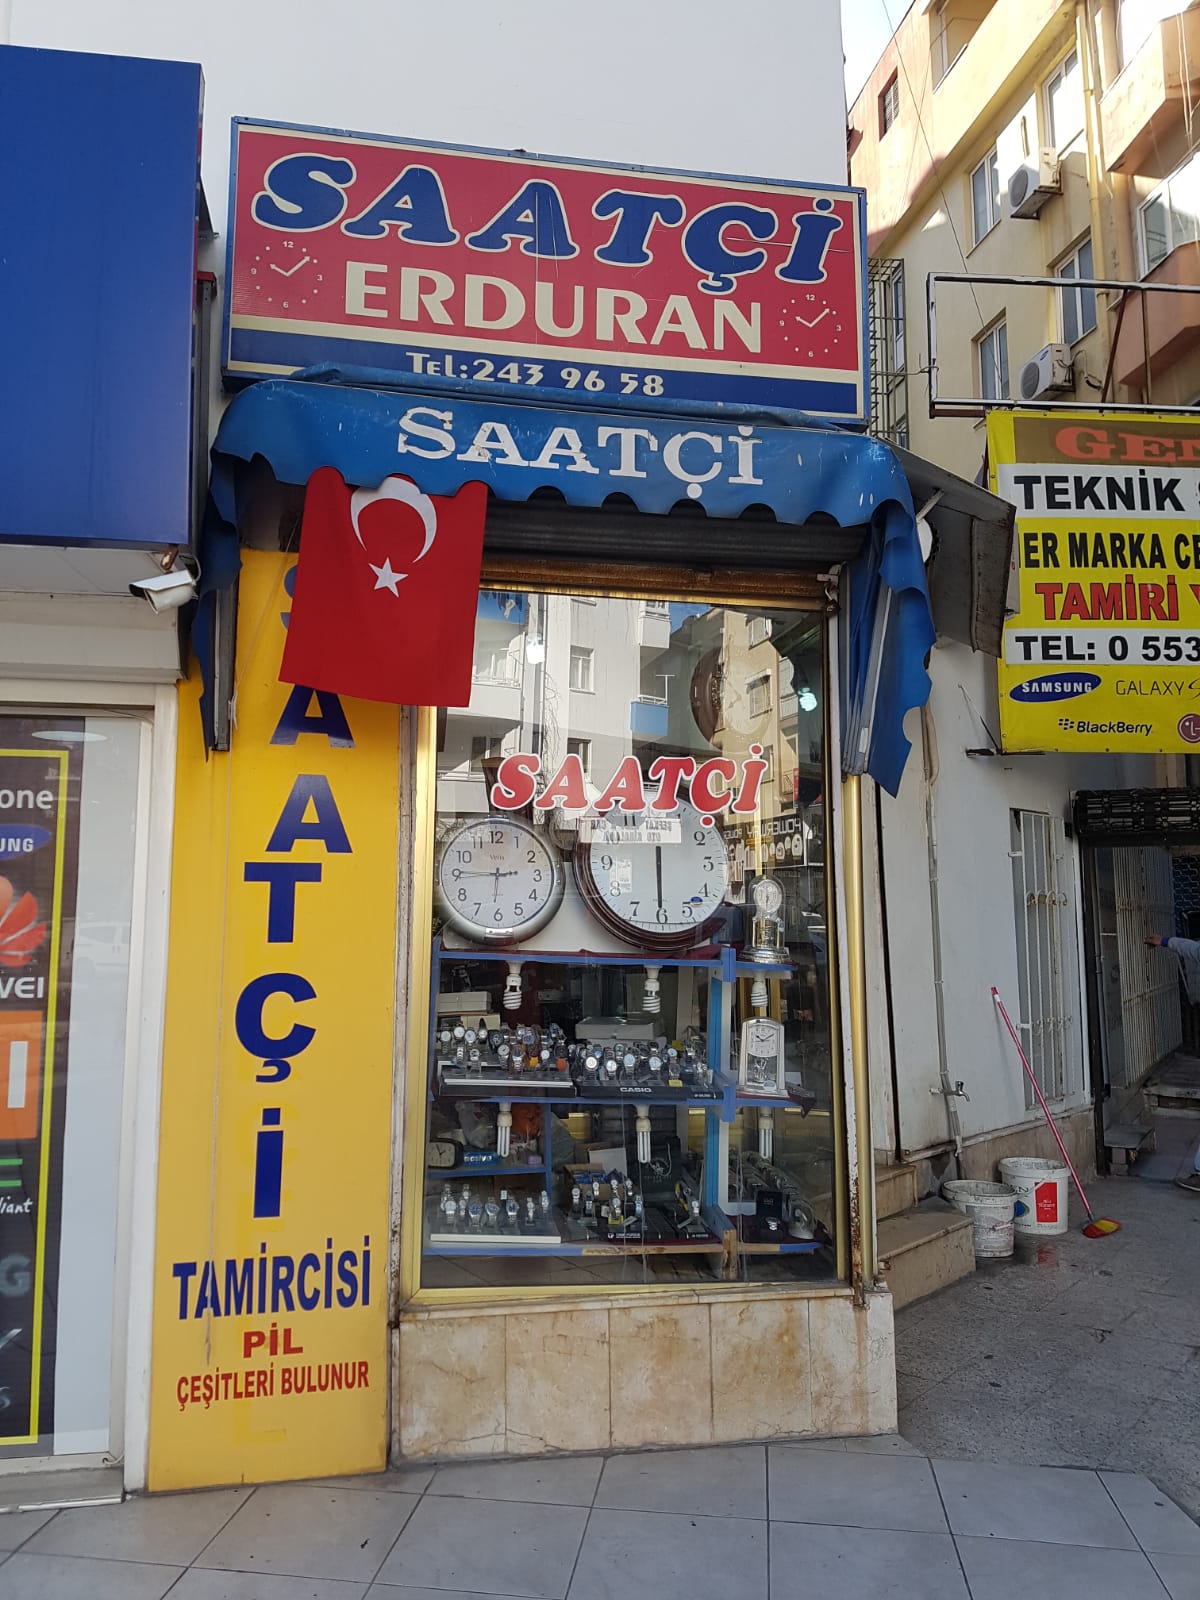 Saatçi Erduran Muratpaşa